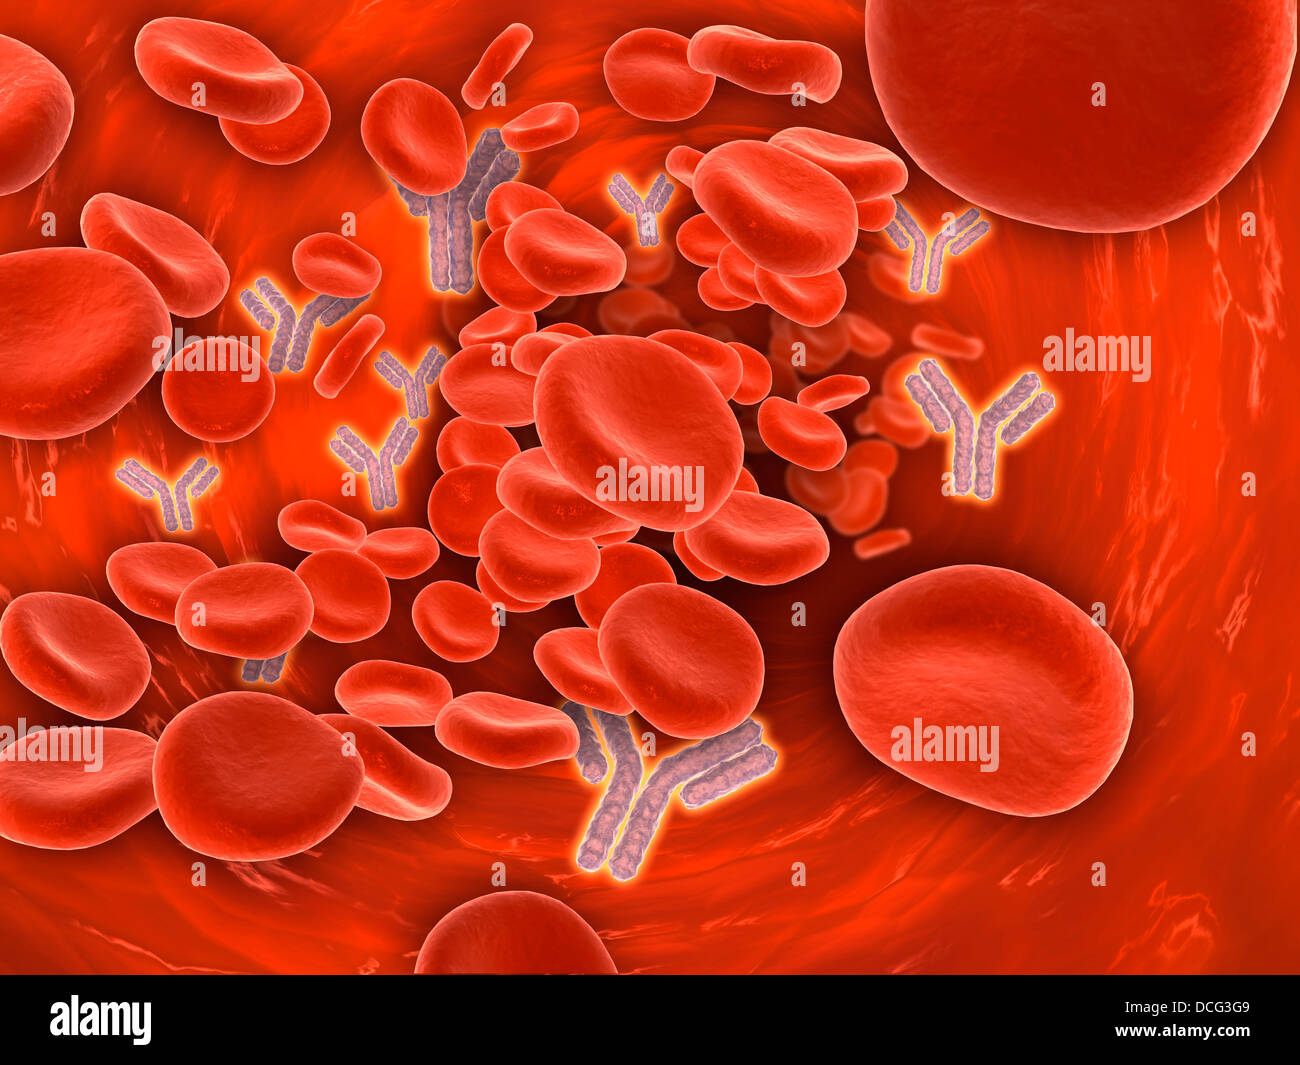 Immagine concettuale di cromosomi all'interno del flusso sanguigno. Foto Stock